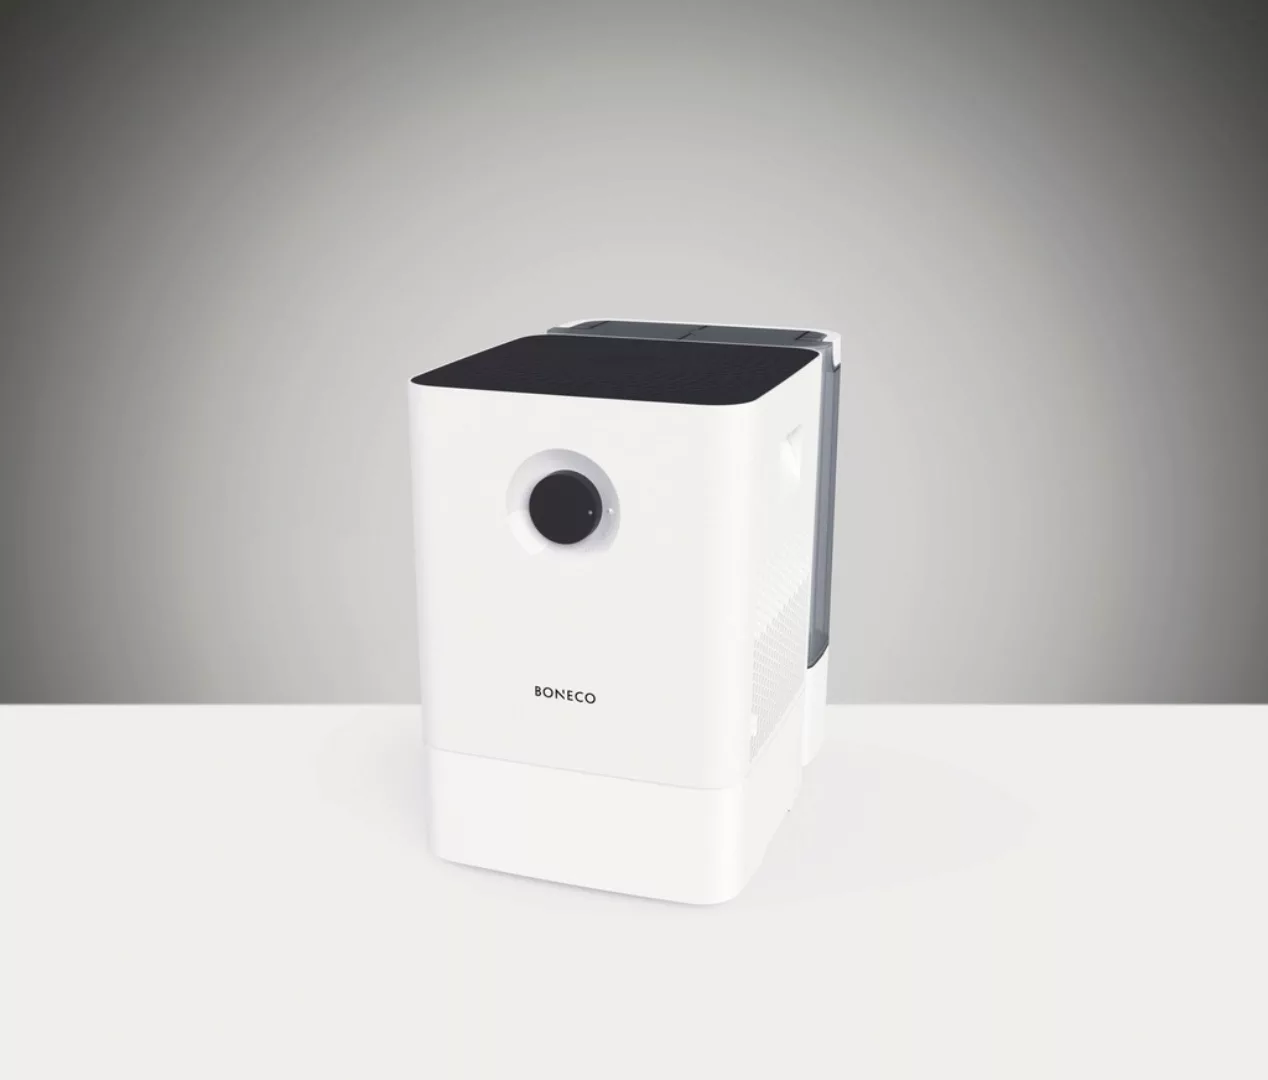 Boneco Luftbefeuchter »W300«, 12 l Wassertank günstig online kaufen